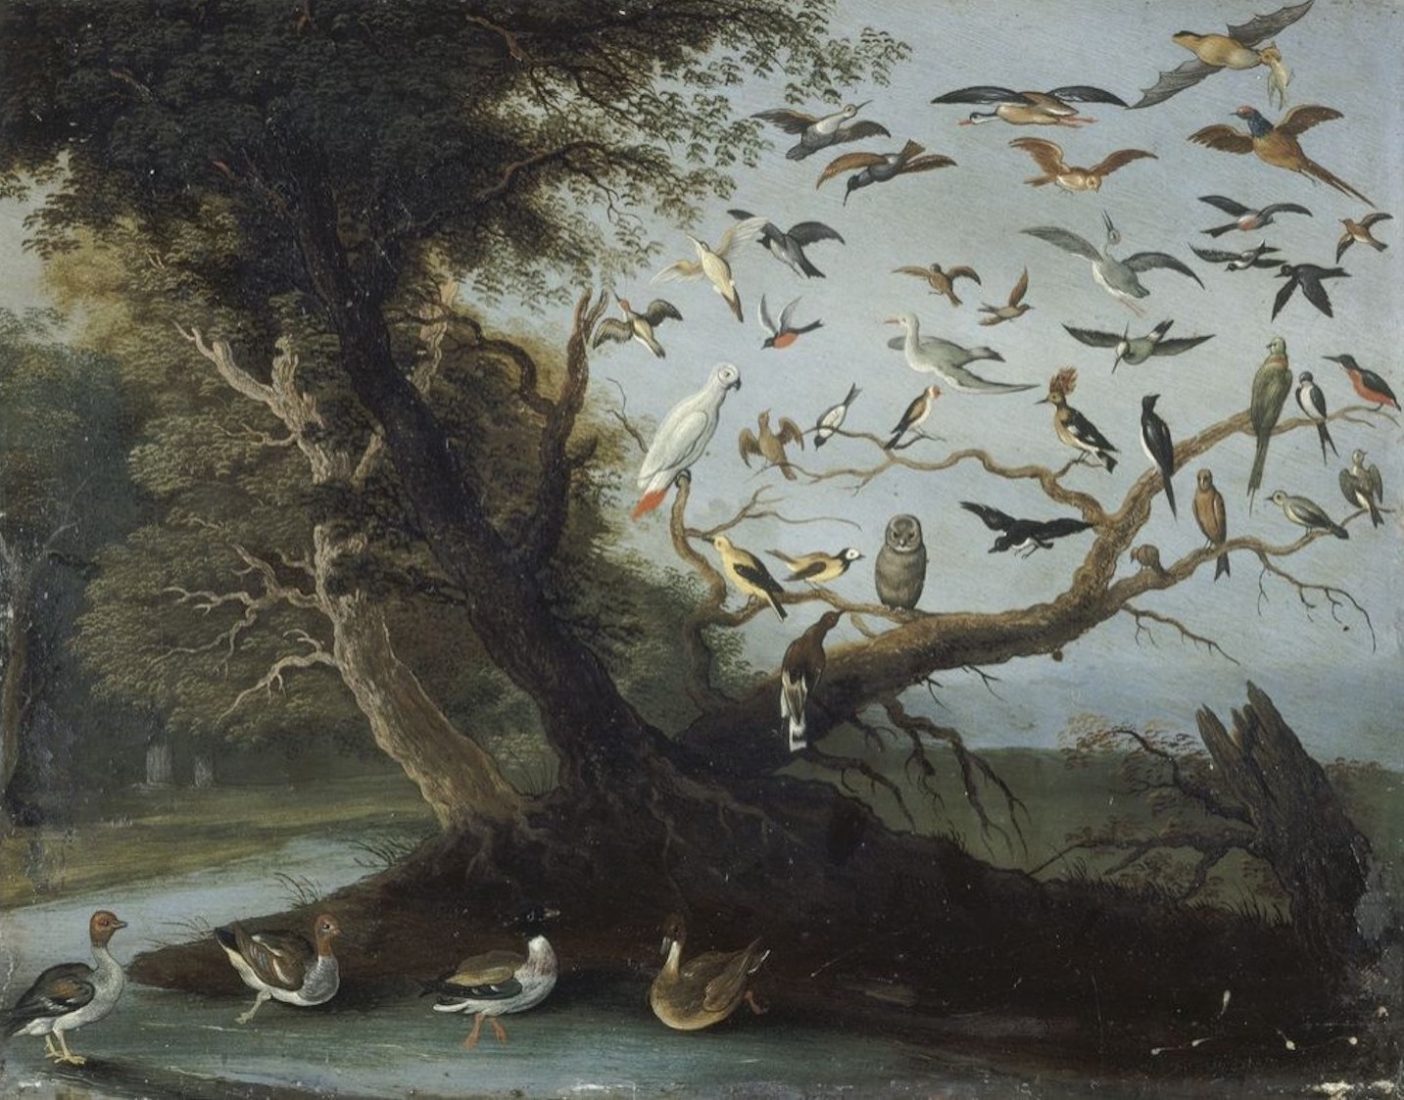 Jan I Van Kessel (1626 - 1679) "L’arbre aux oiseaux",